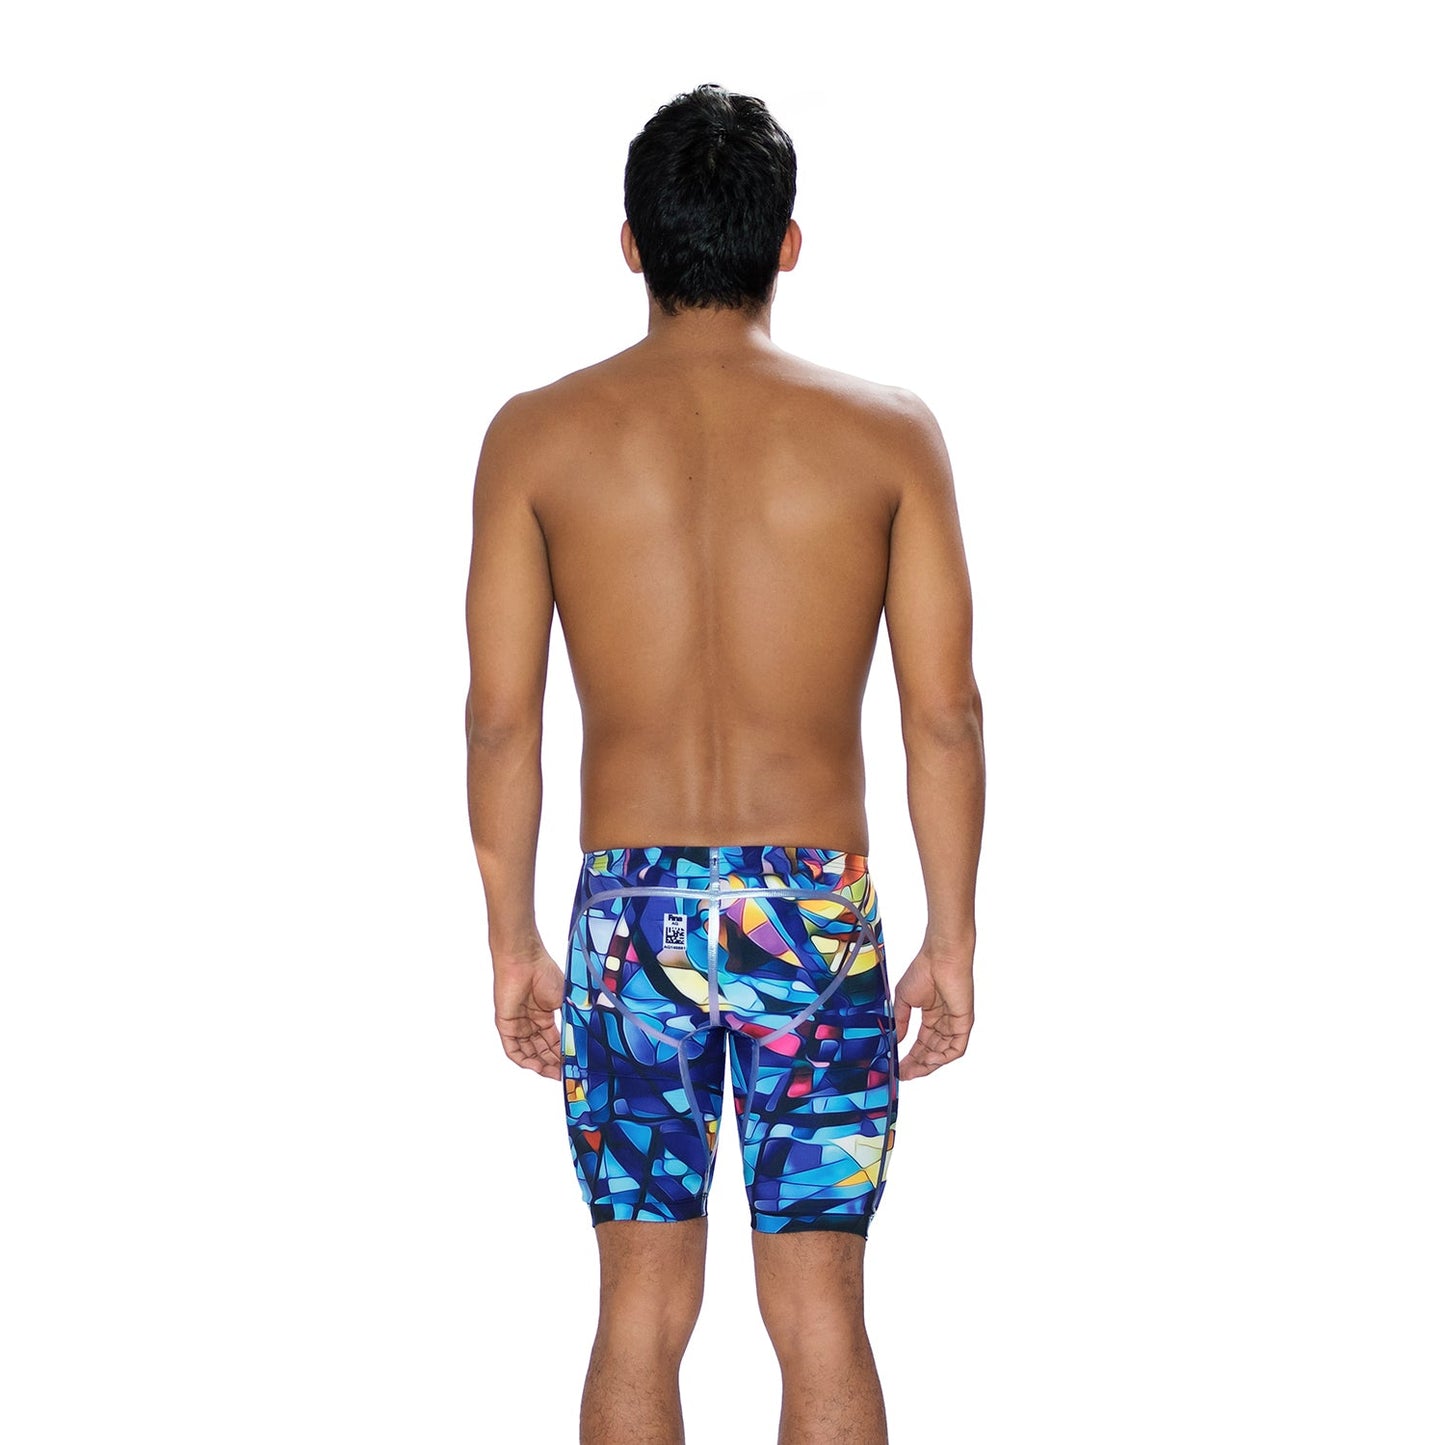 Glass Ocean Glyde Jammer Swimsuit